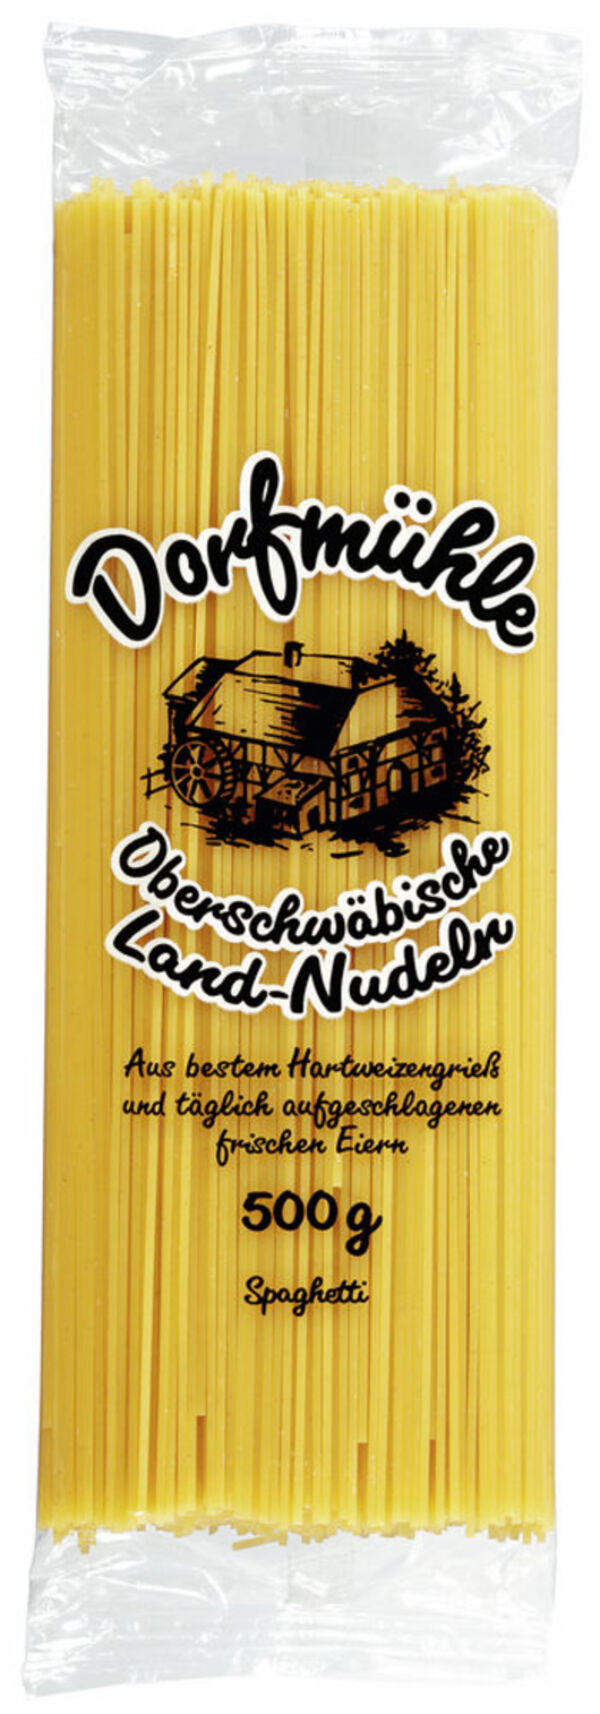 Bild 1 von Dorfmühle Oberschwäbische Land-Nudeln Spaghetti 500 g